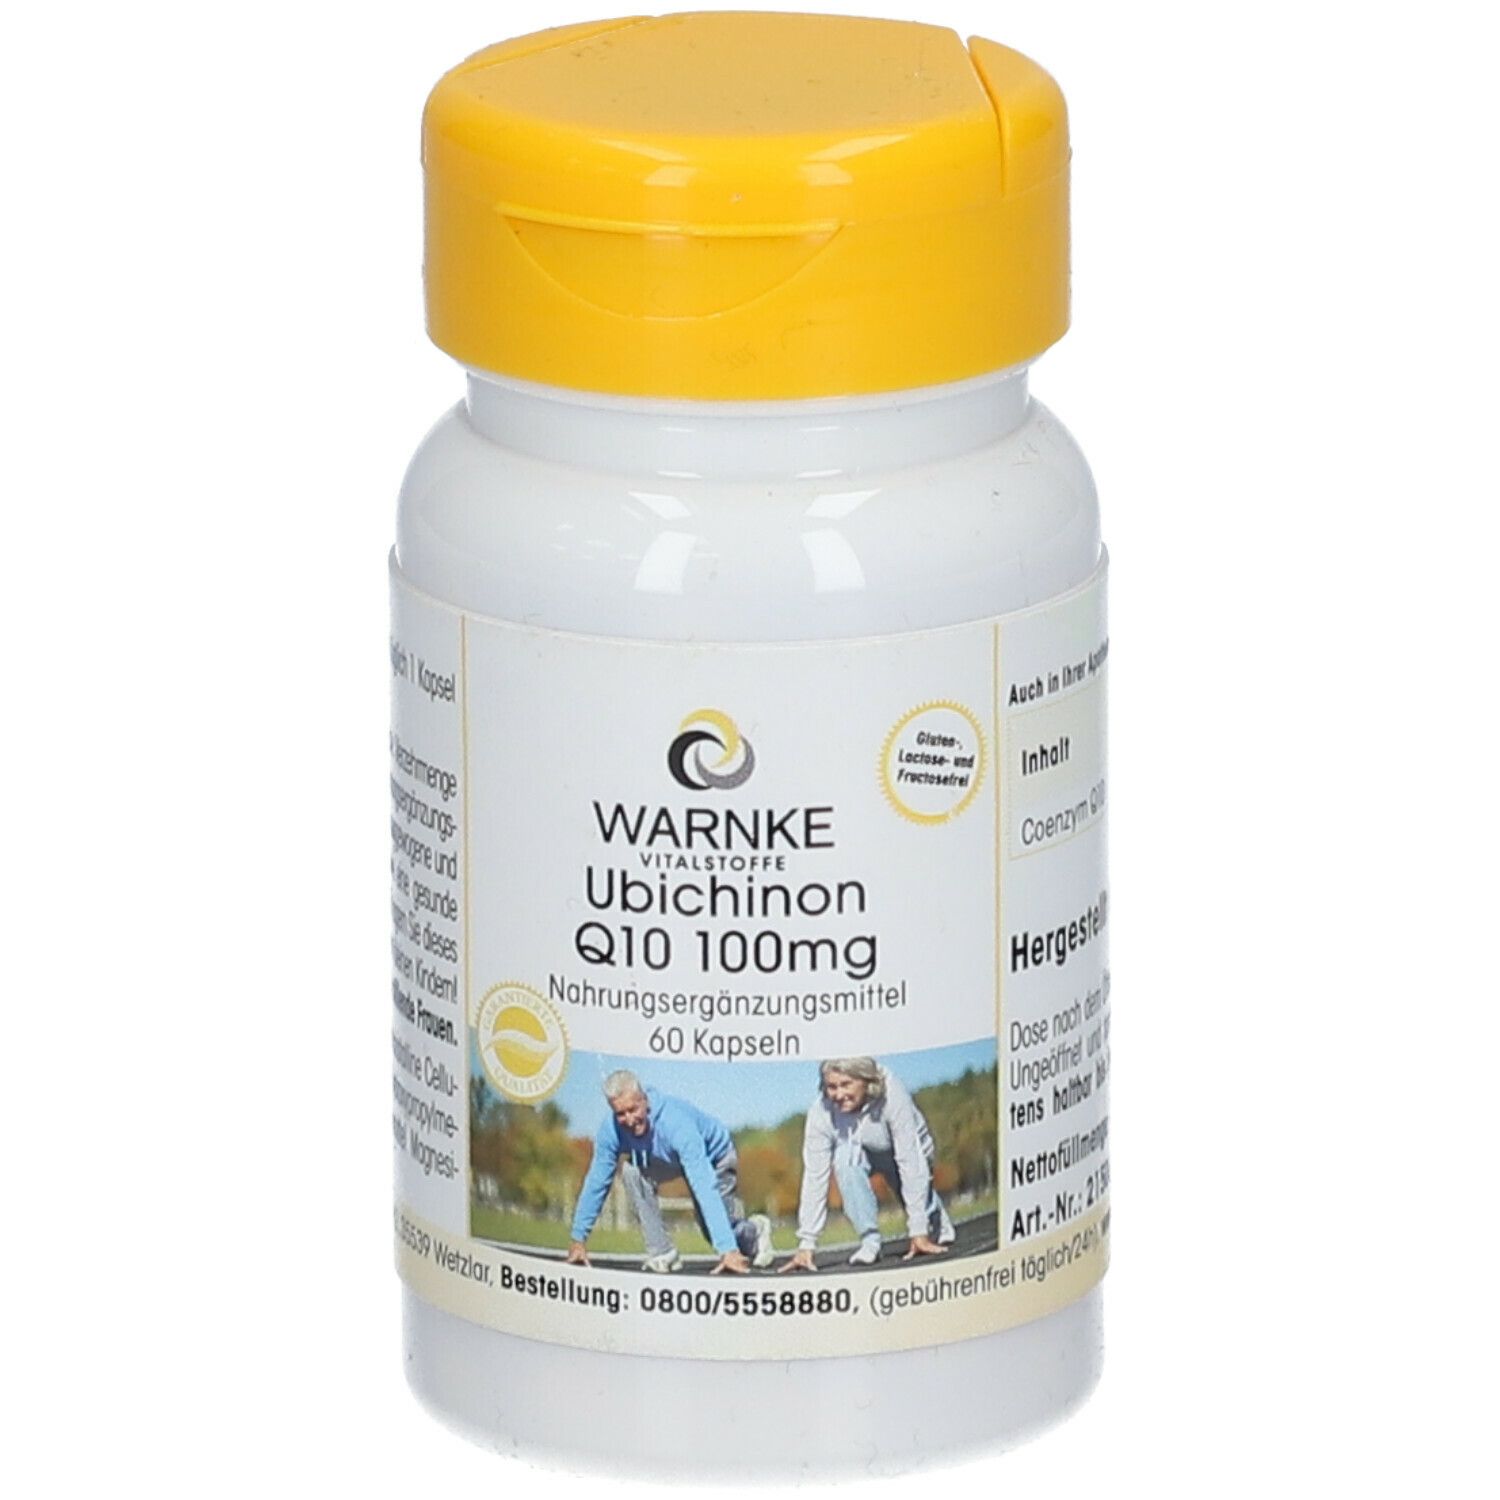 WARNKE Ubichinon Q10 100 mg